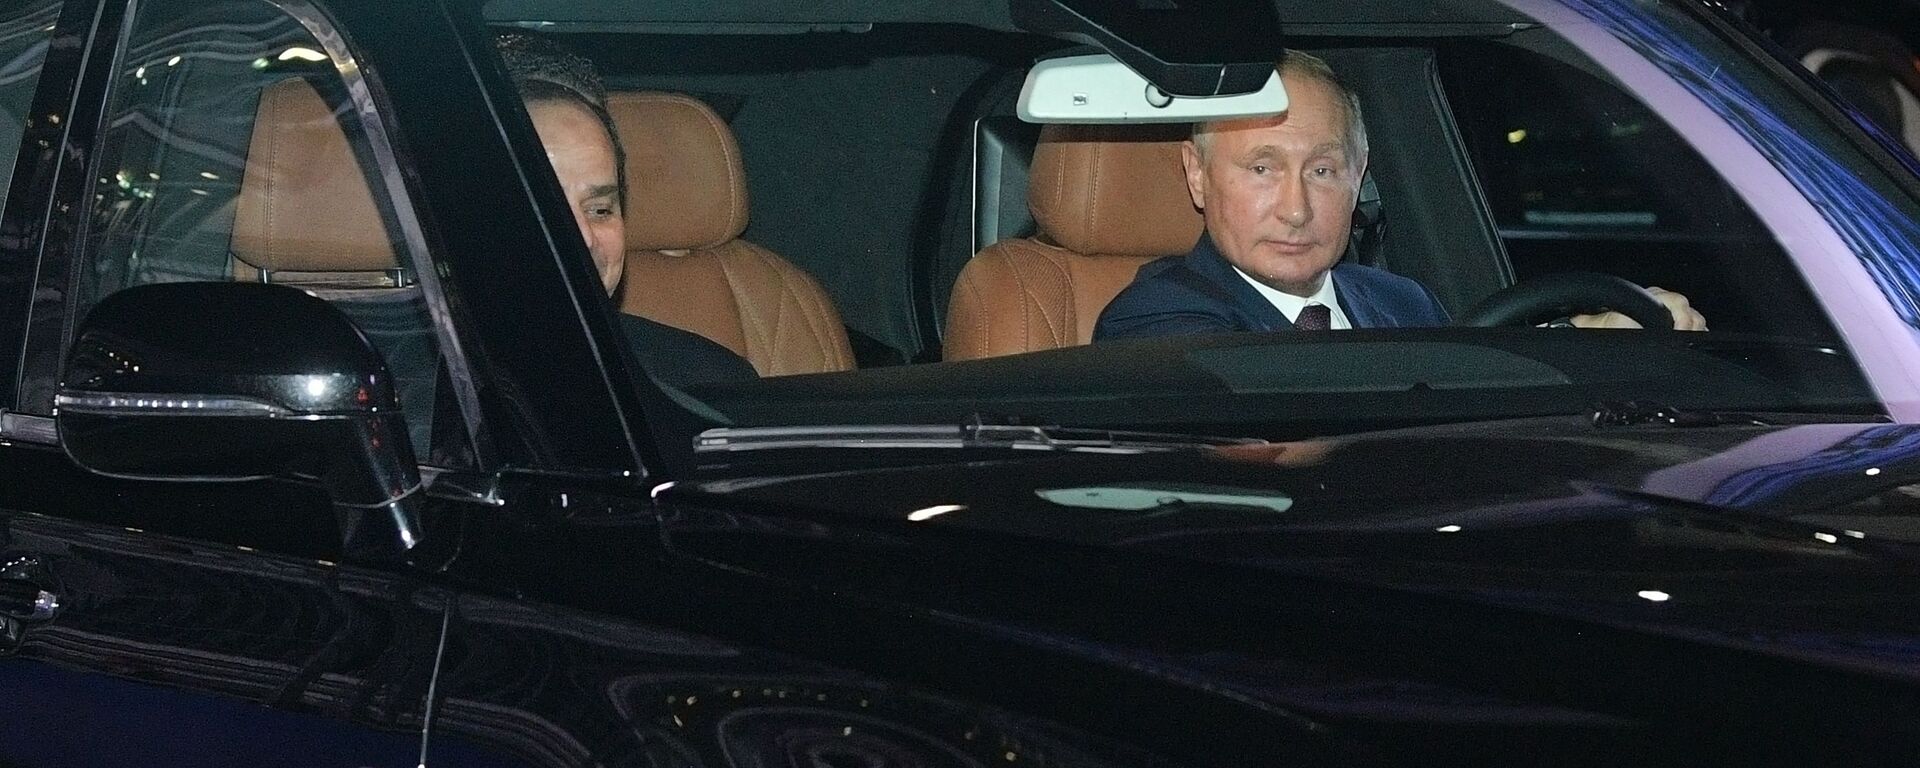 Ruski predsednik Vladimir Putin u svojoj limuzini - Sputnik Srbija, 1920, 24.11.2019